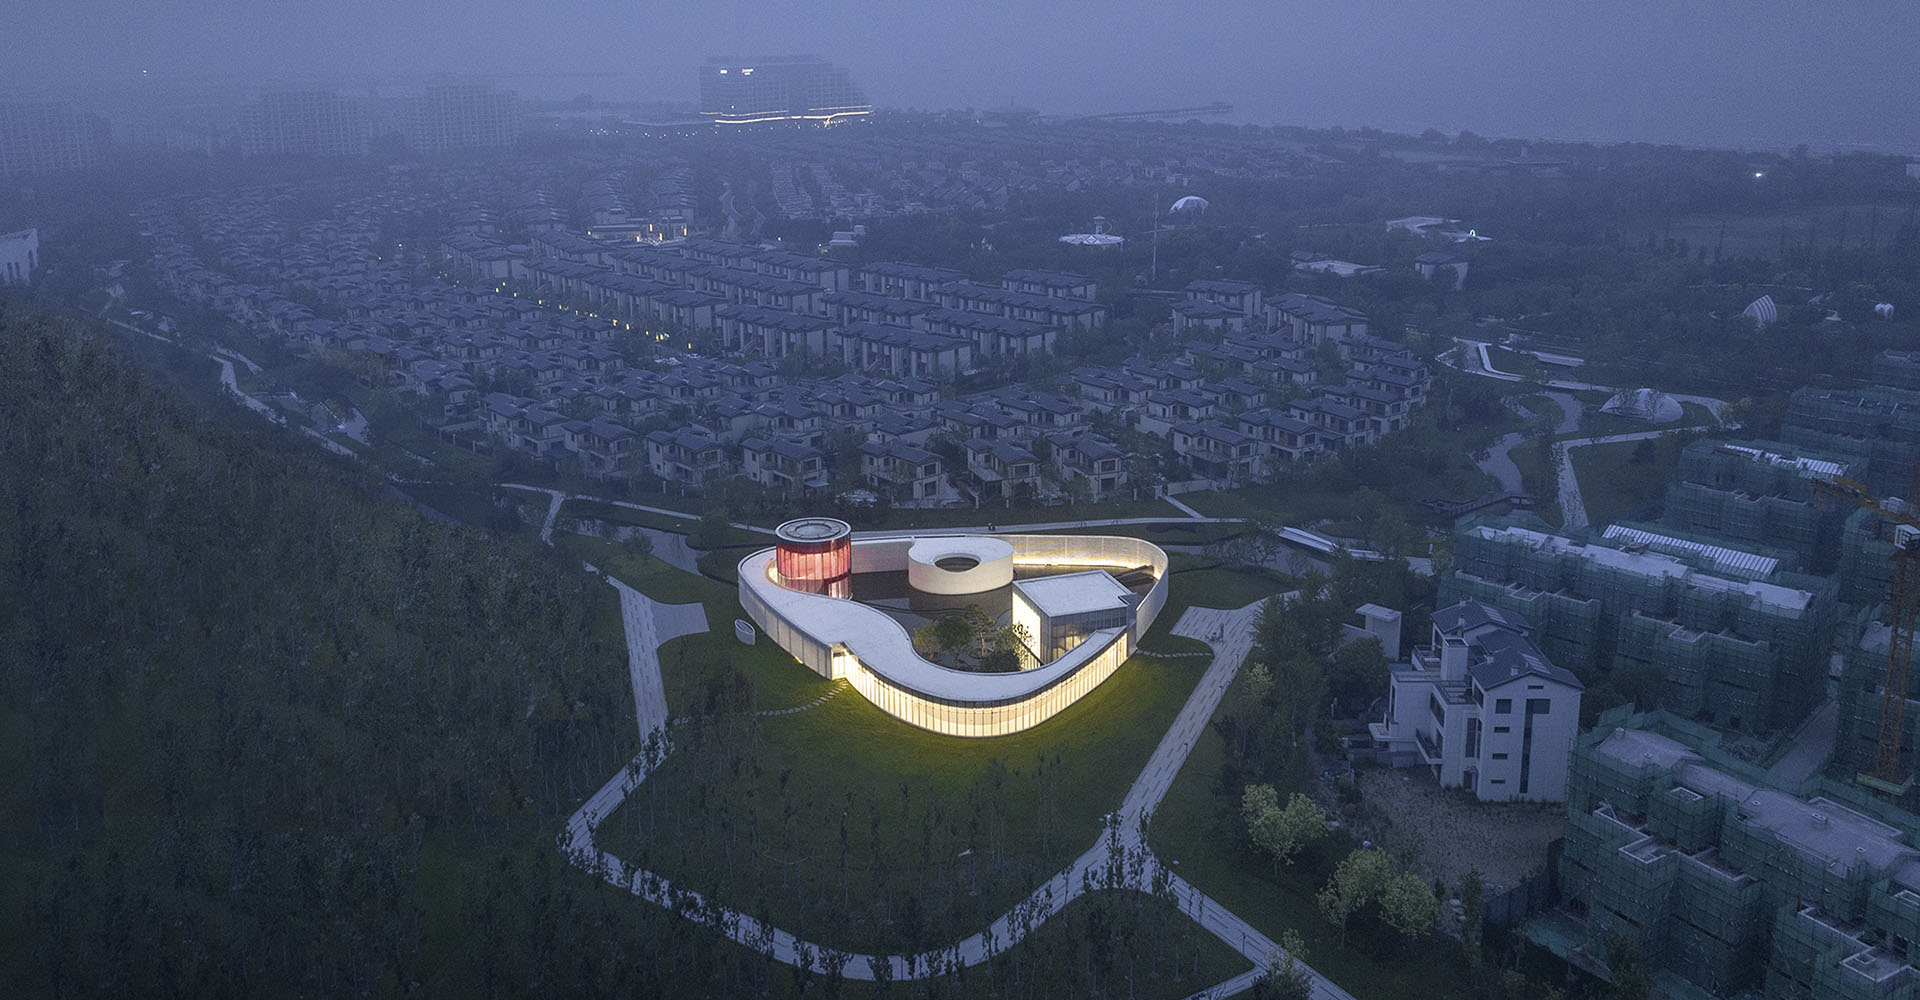 Рай для интровертов - в Китае открылся арт-центр "Монолог", состоящий из разных архитектурных объемов